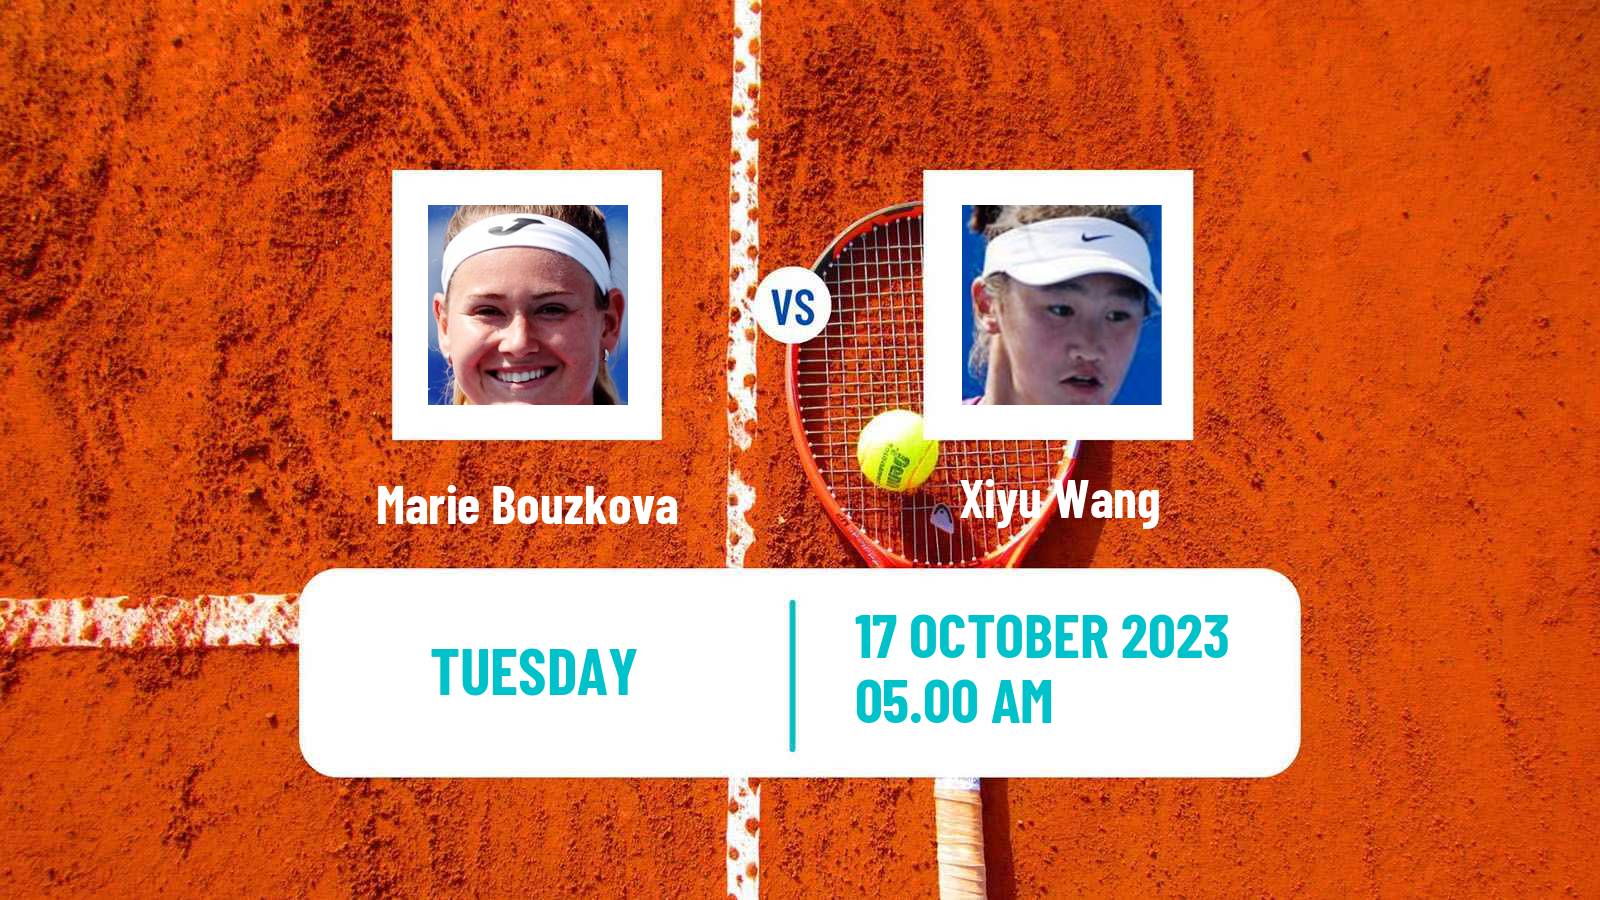 Tennis WTA Nanchang Marie Bouzkova - Xiyu Wang